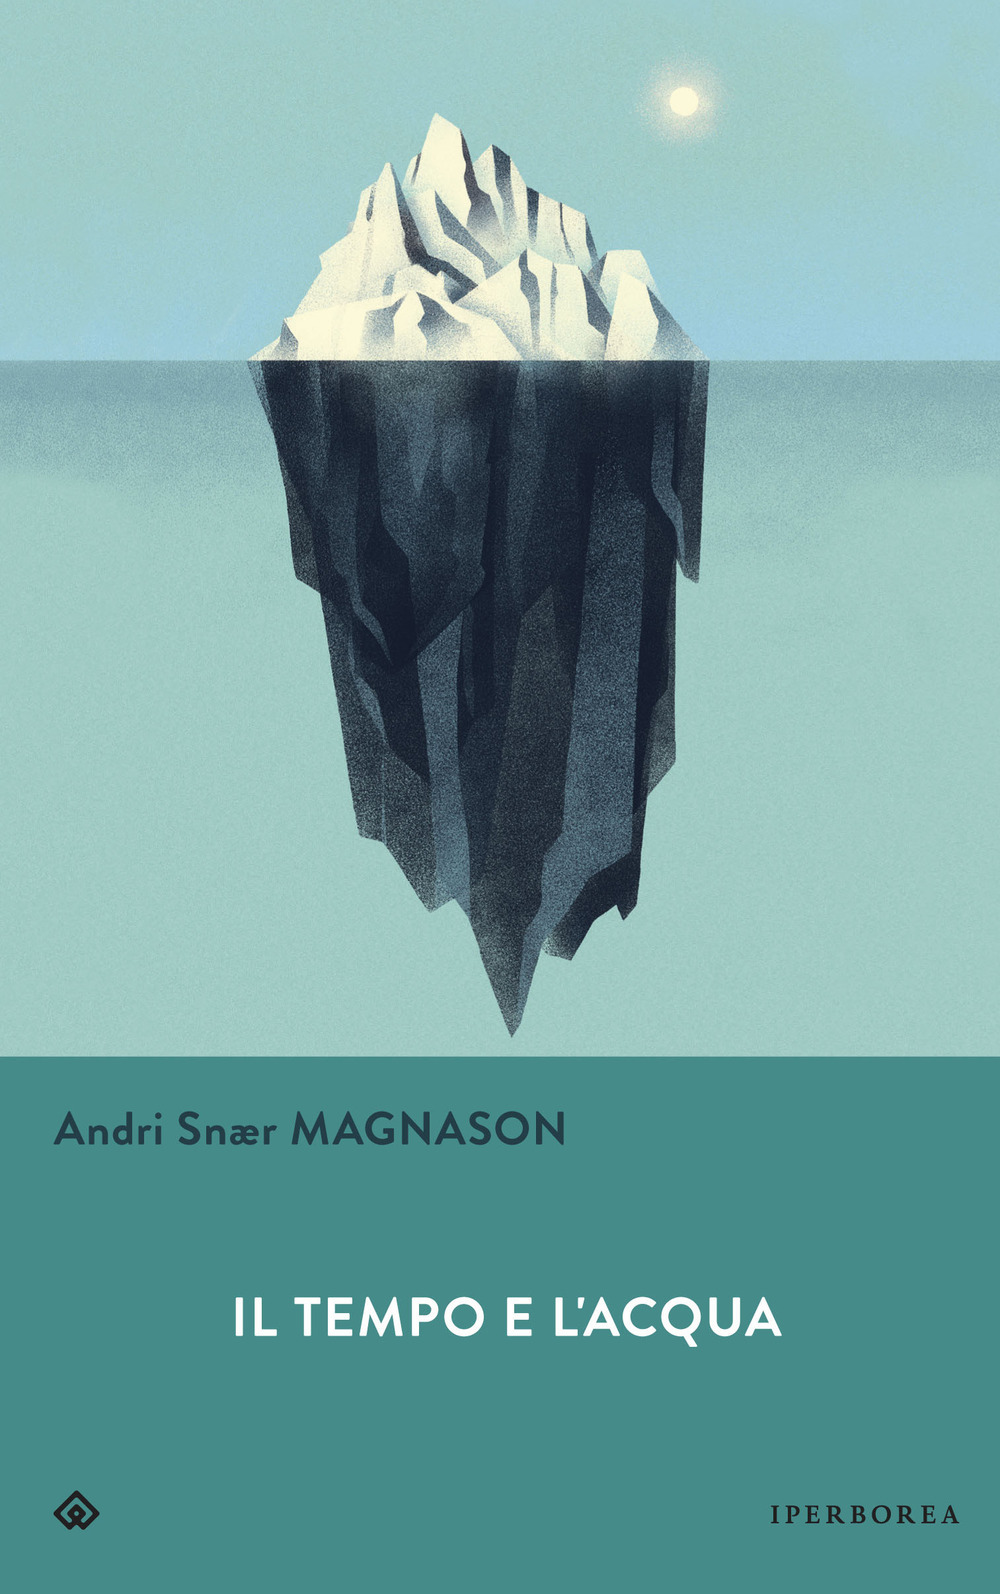 Libri Magnason Andri Snær - Il Tempo E L'acqua NUOVO SIGILLATO, EDIZIONE DEL 30/09/2020 SUBITO DISPONIBILE